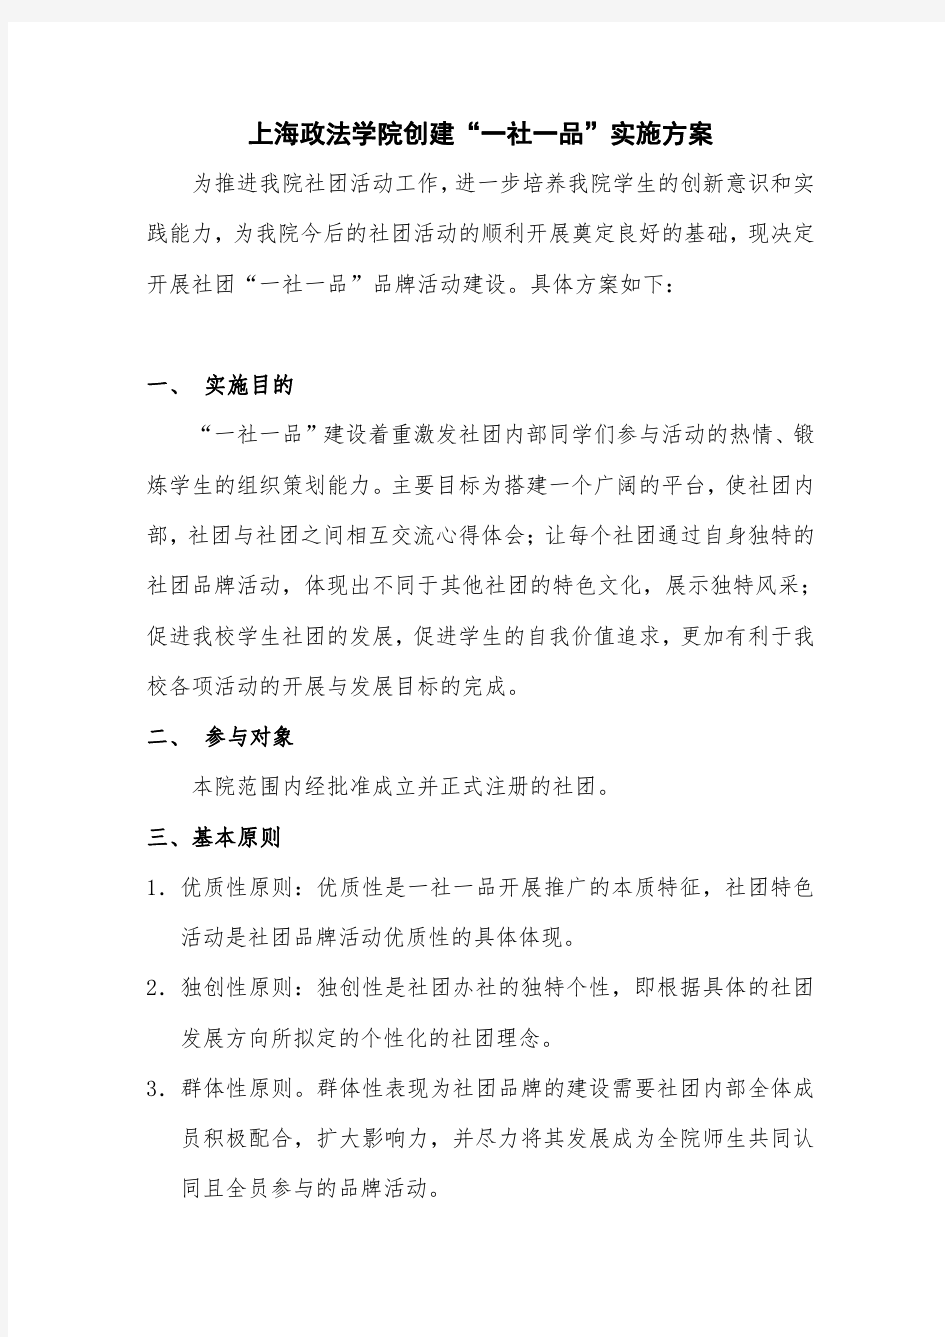 上海政法学院创建“一社一品”实施方案